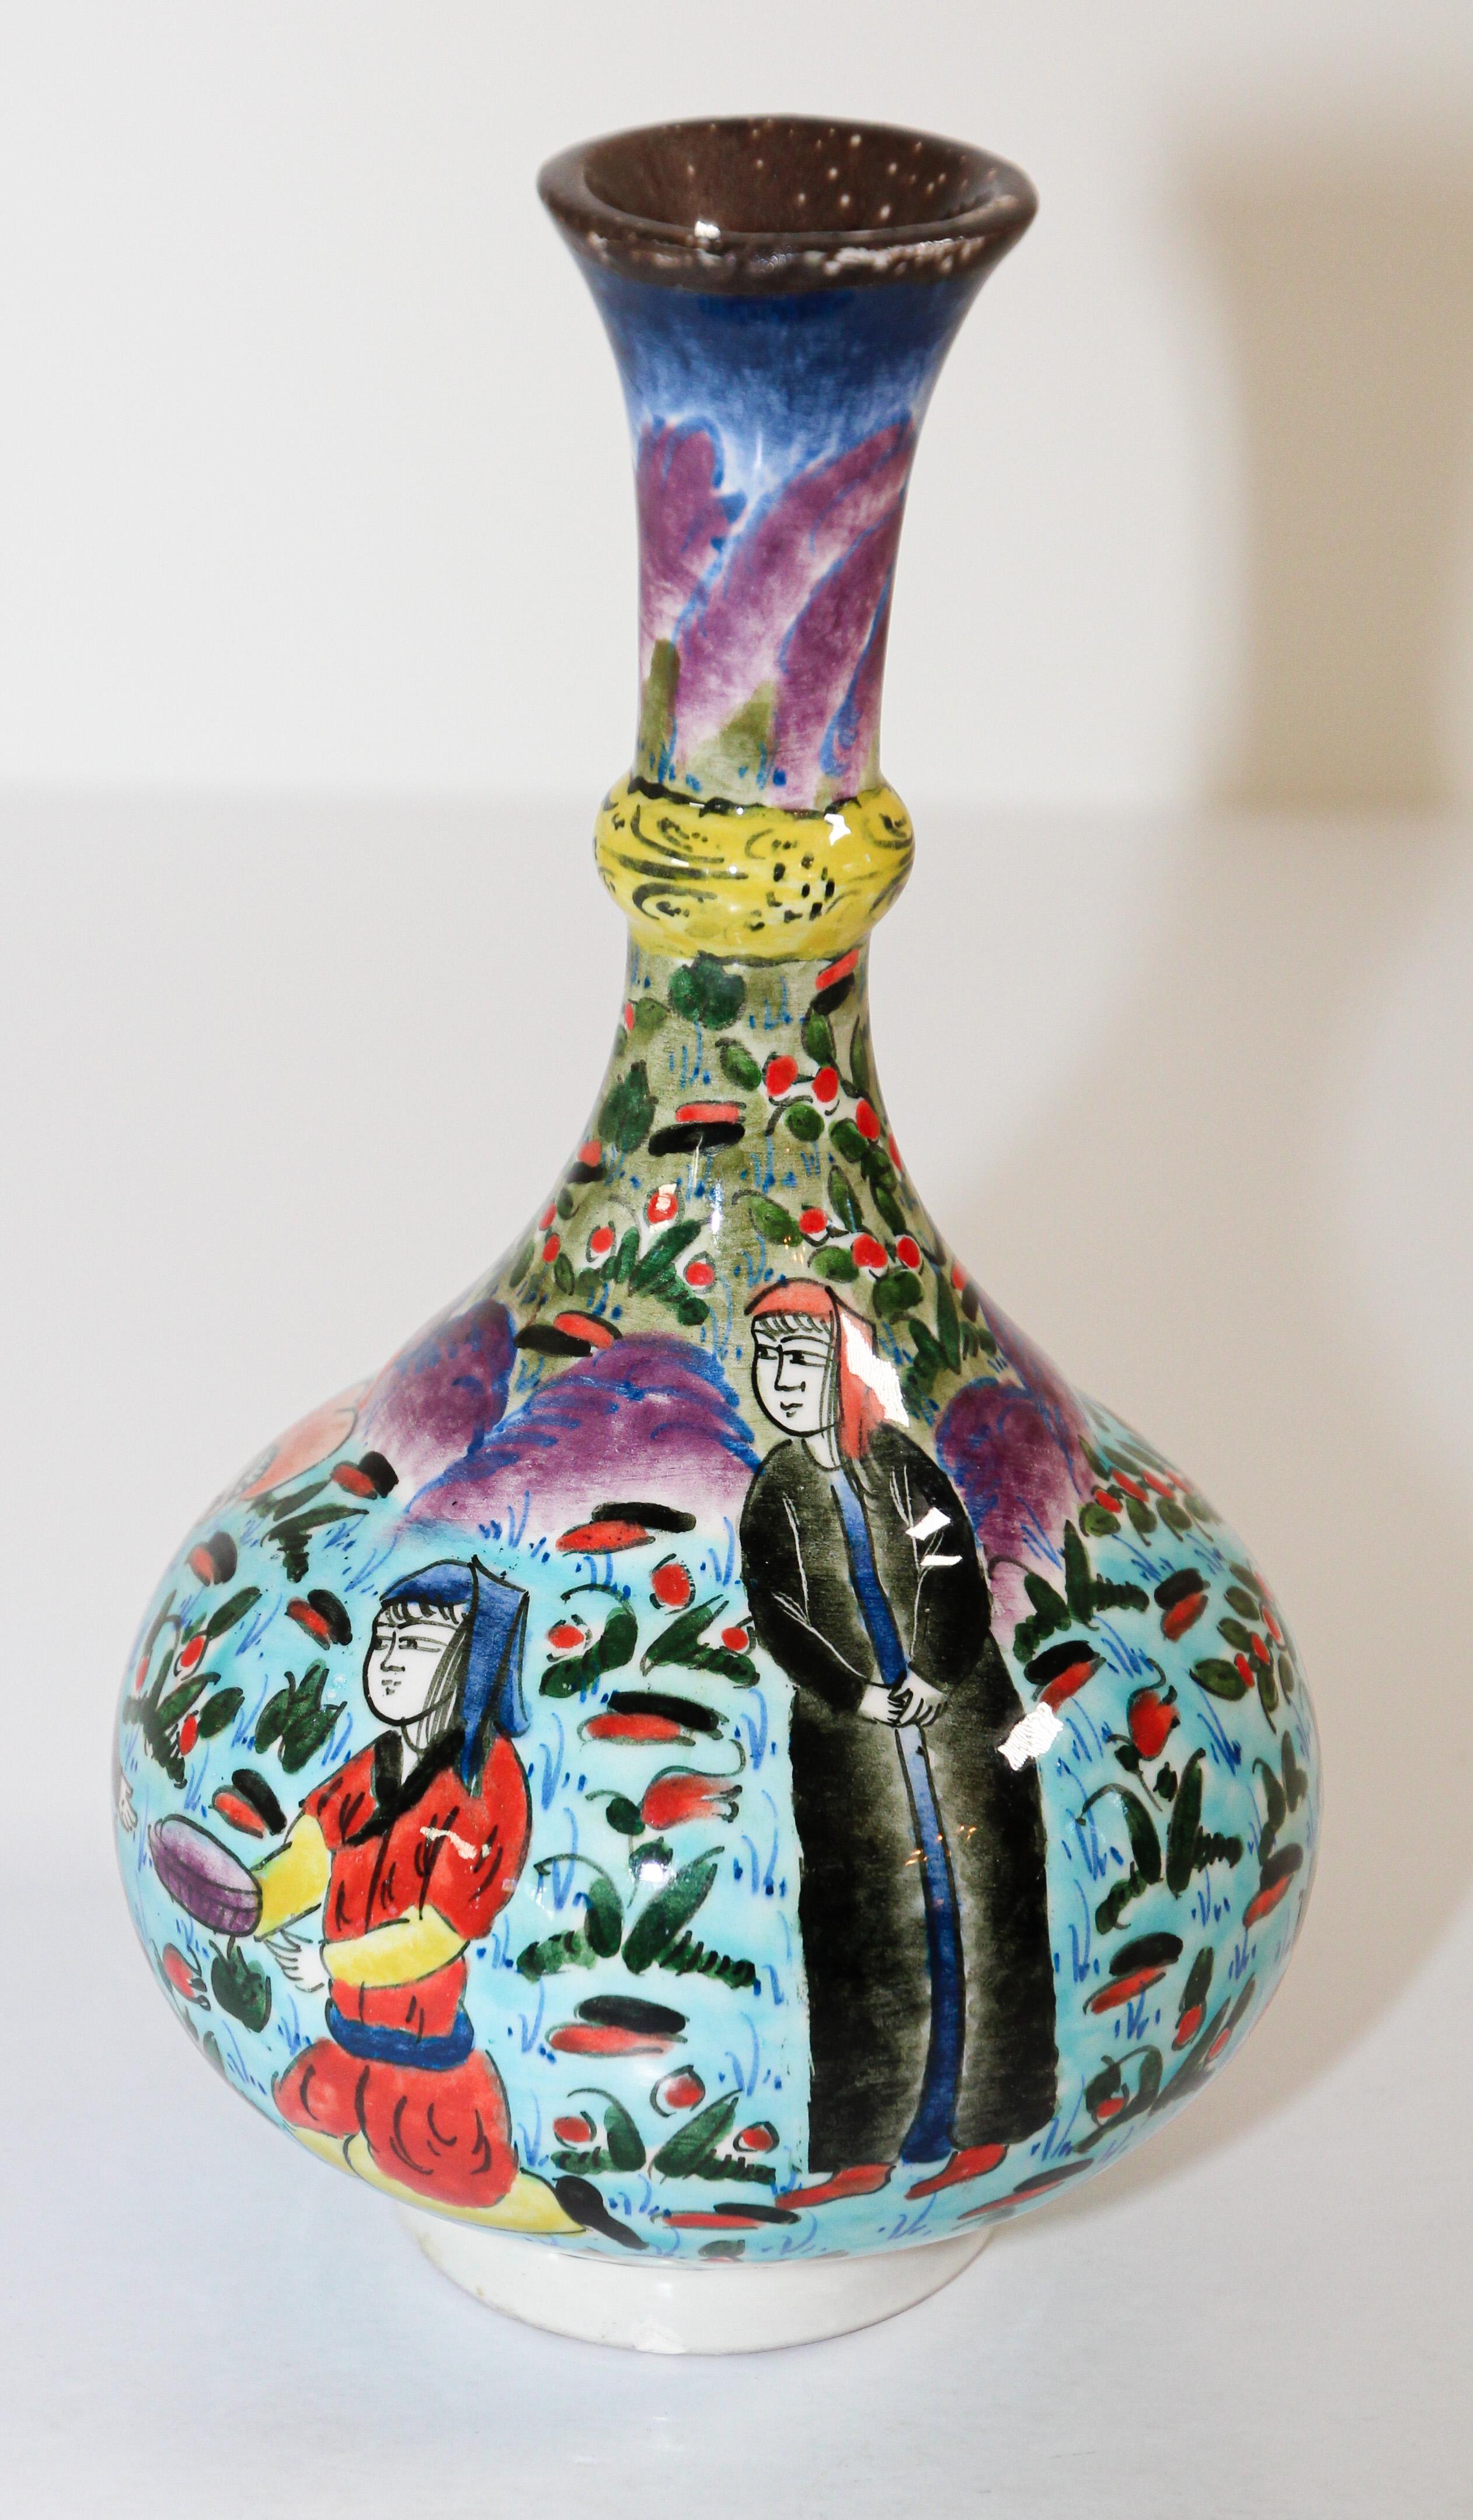 Petit vase décoratif en céramique émaillée polychrome de style Kütahya, peint et travaillé à la main, avec une scène ottomane.
Il s'agit d'un vase peint à la main de façon complexe, fabriqué à Marmara, en Turquie :
Kütahya est célèbre pour ses